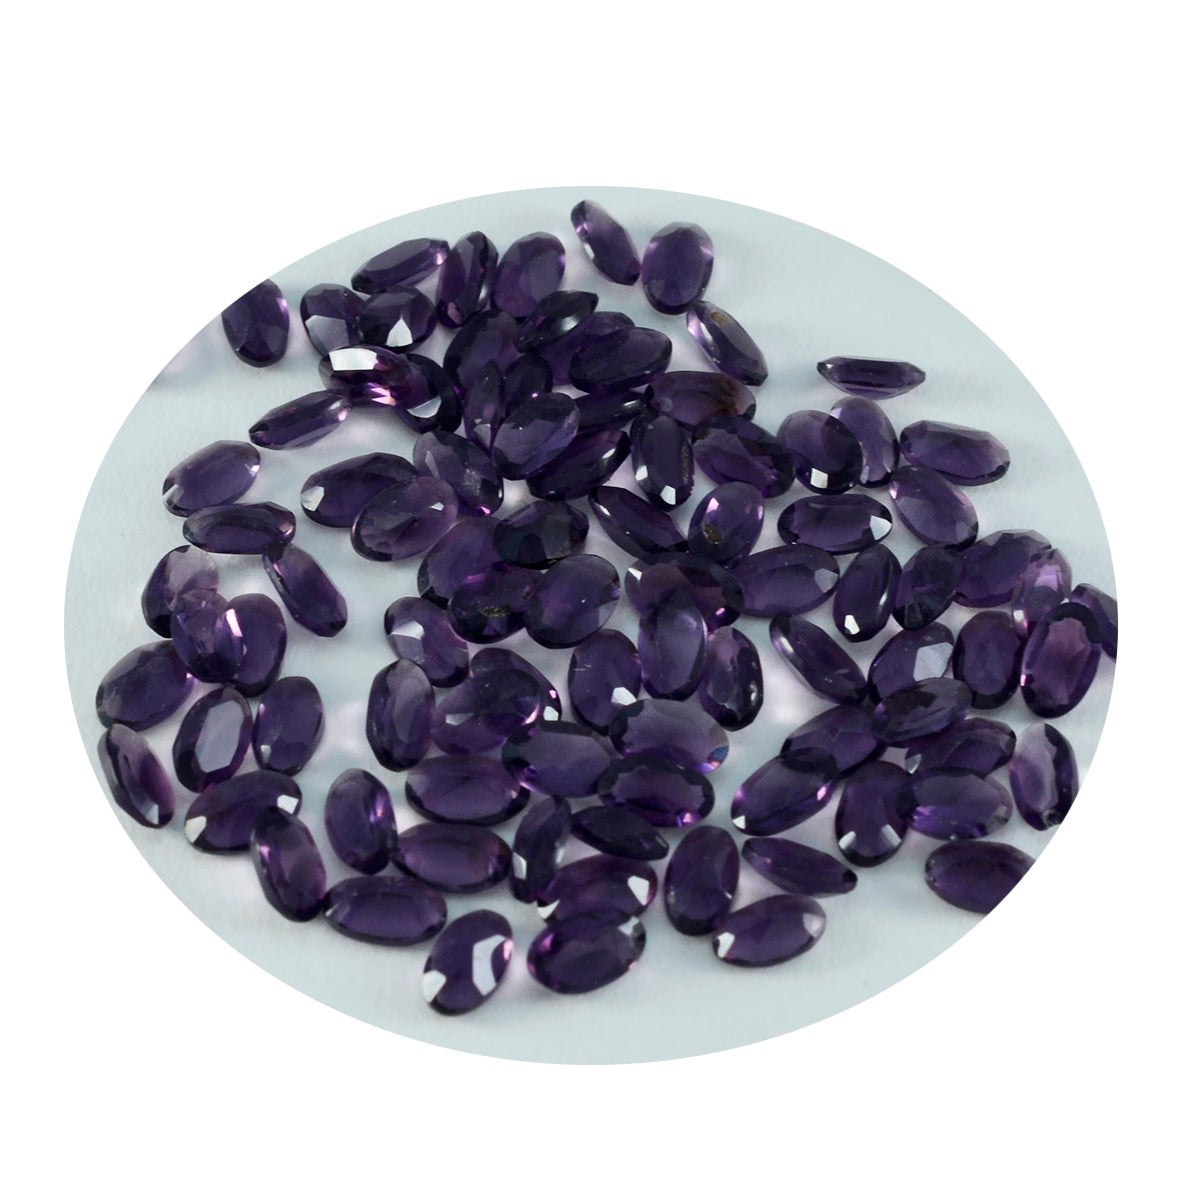 Riyogems 1 pieza de amatista púrpura CZ facetada 4x6 mm forma ovalada hermosa calidad piedra preciosa suelta